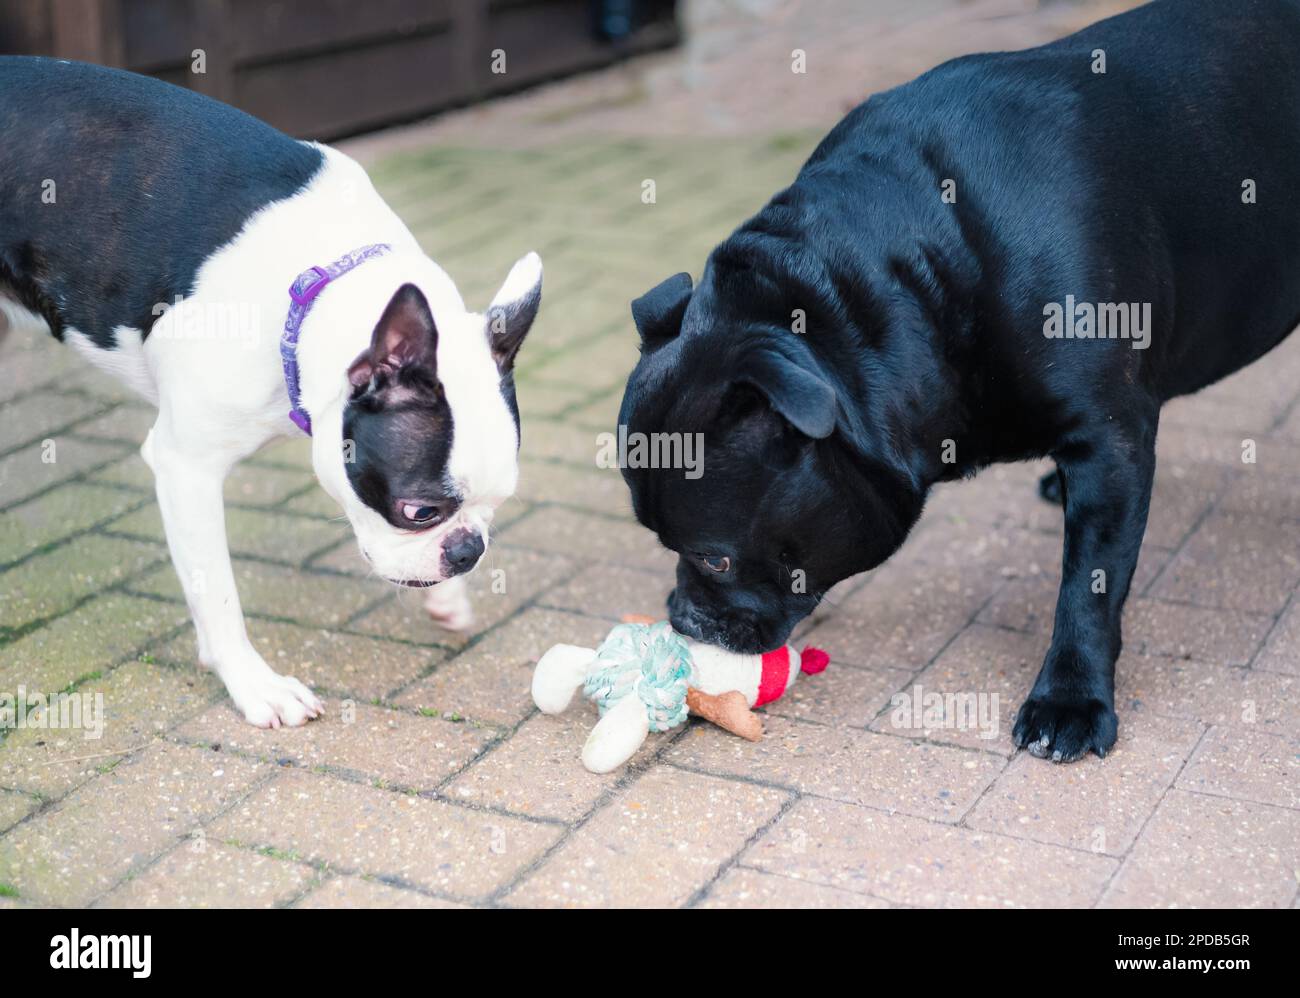 Staffordshire Bull Terrier che guarda e odora un giocattolo di corda sul terreno. Un Boston Terrier accanto a lui sta per provare a portare via il giocattolo. Foto Stock